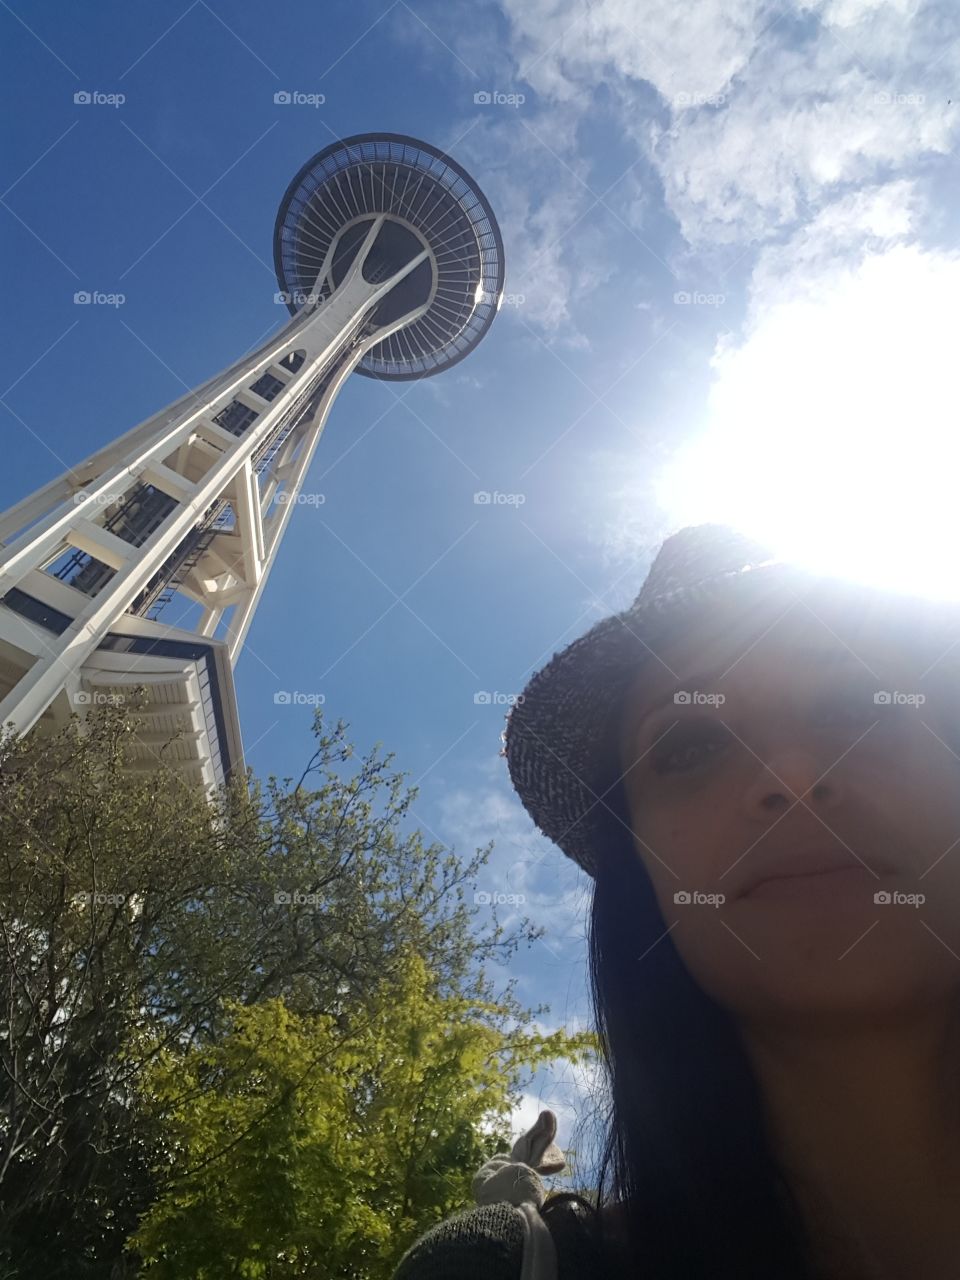 Seattle sun